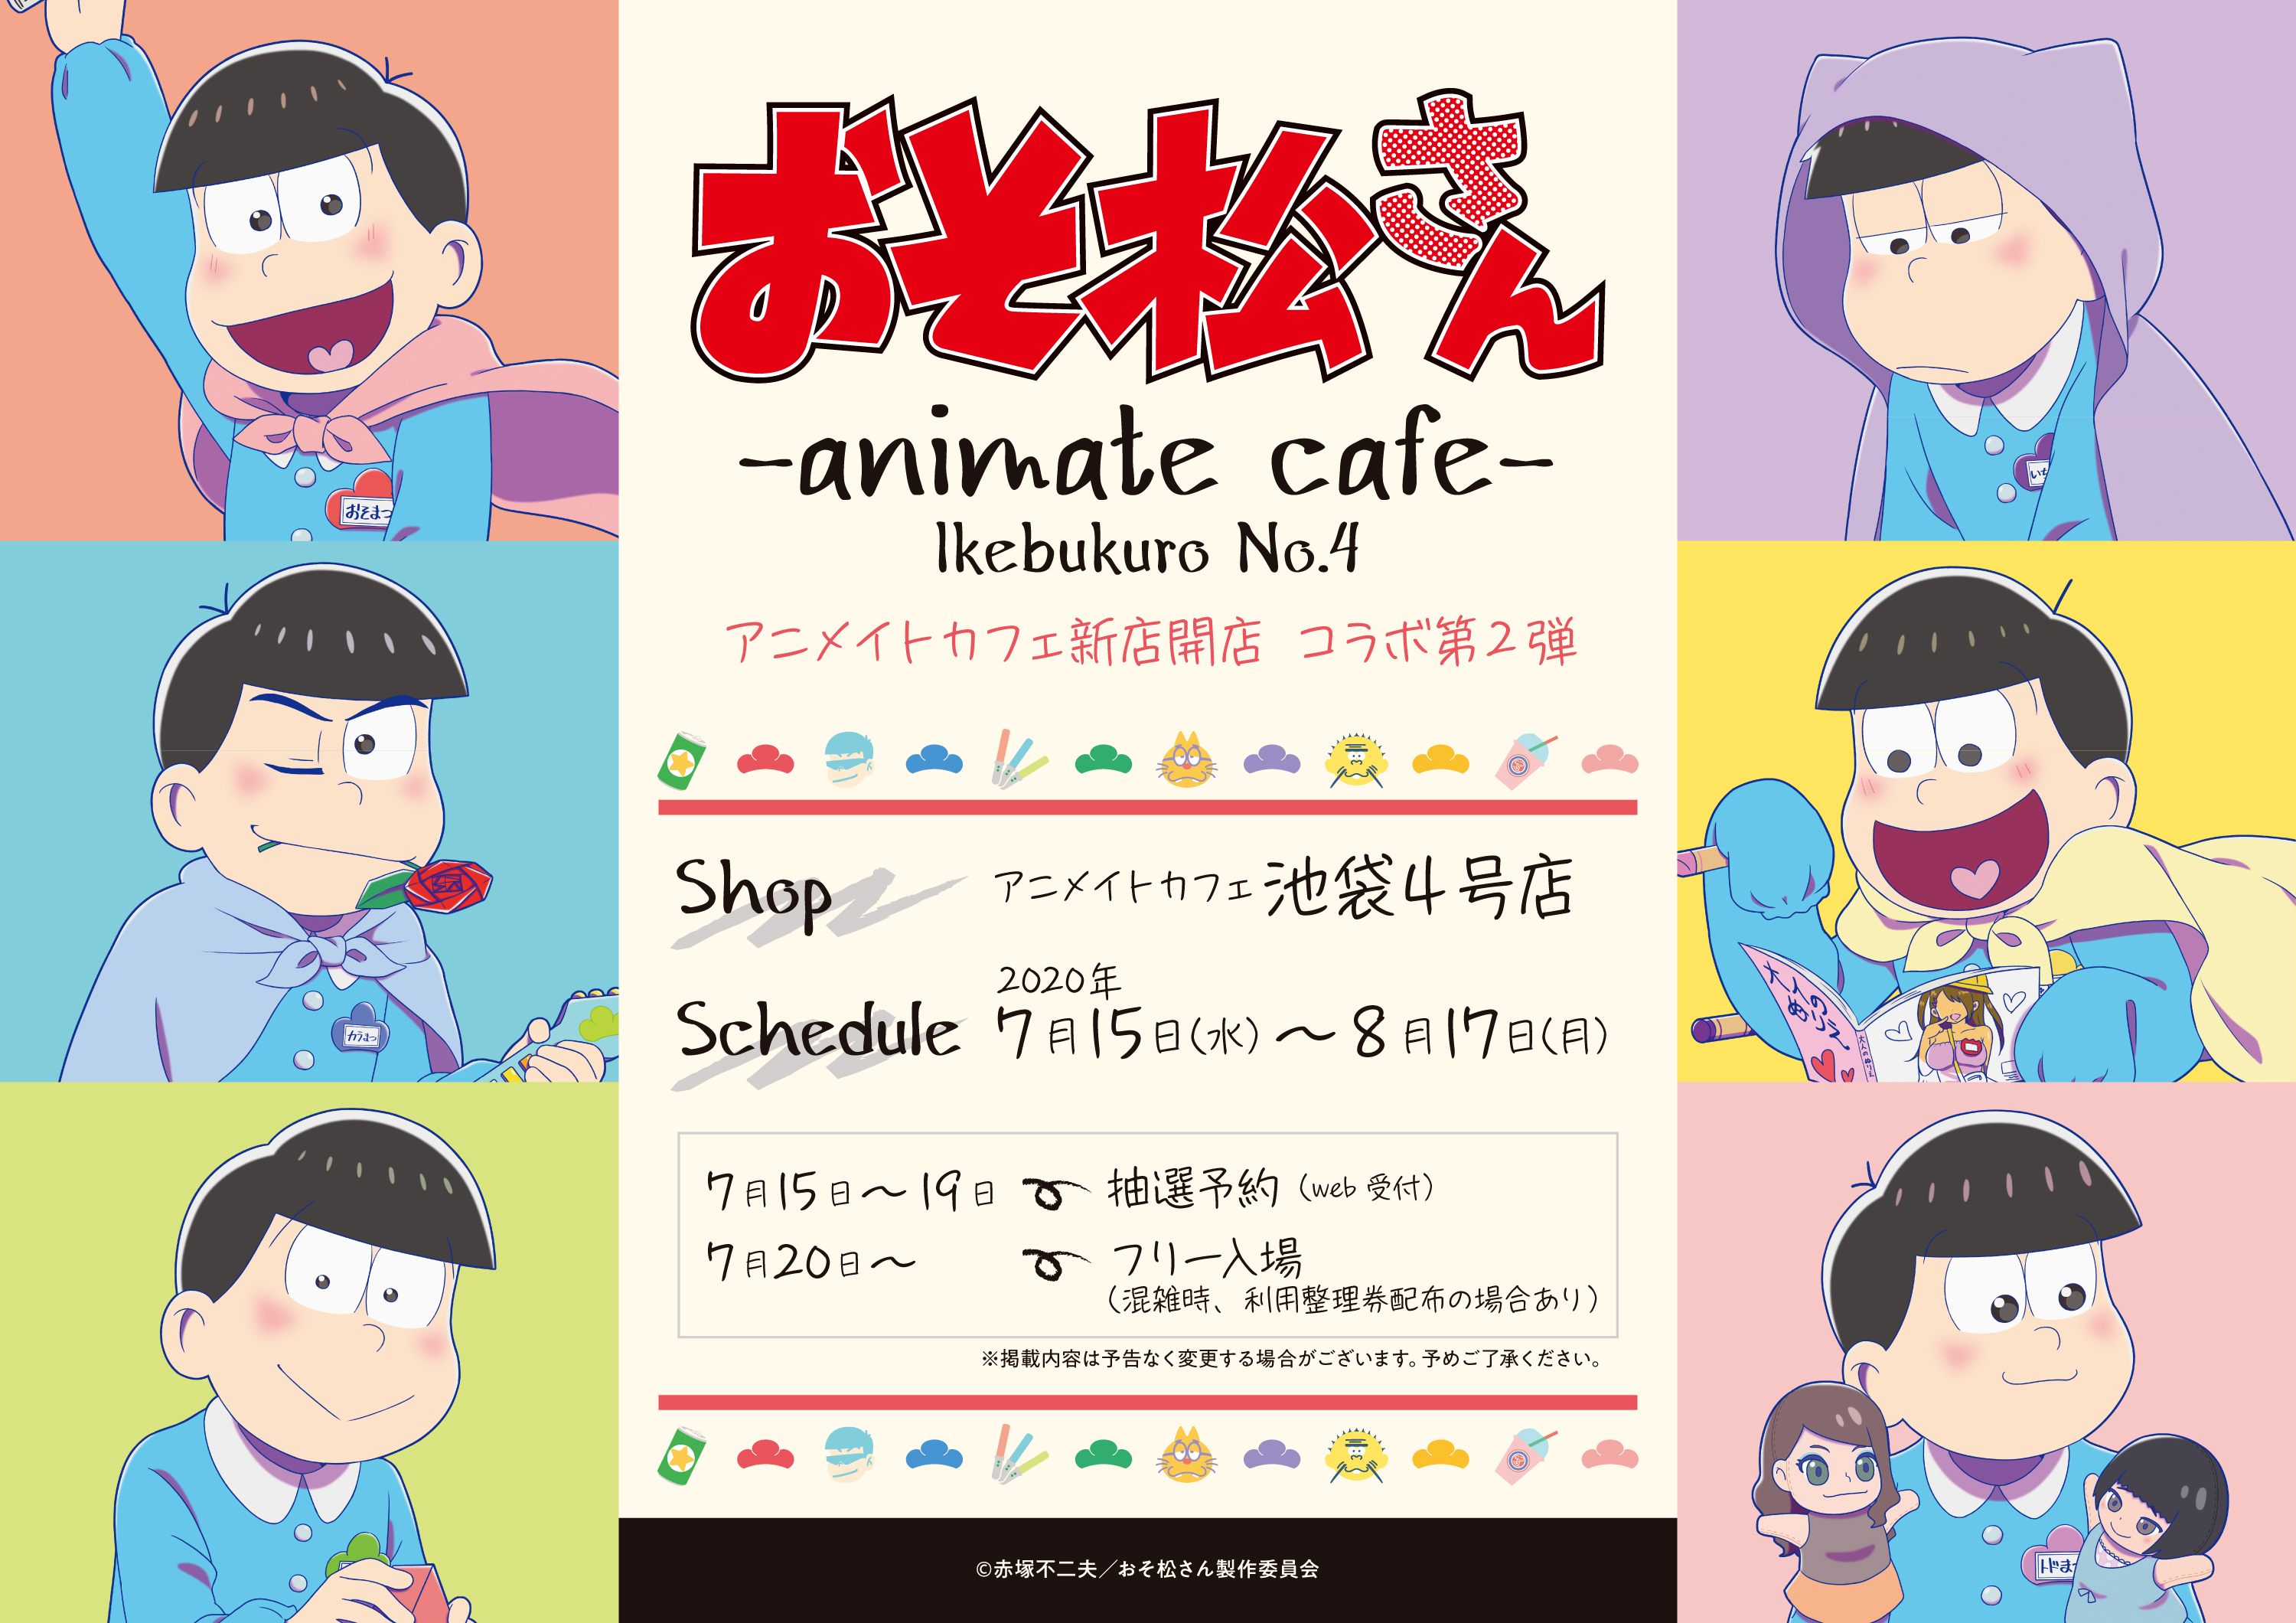 Tvアニメ おそ松さん とアニメイトカフェのコラボレーションカフェ決定 アニメイトカフェ池袋4号店で7 月15日より開催 株式会社アニメイトホールディングスのプレスリリース